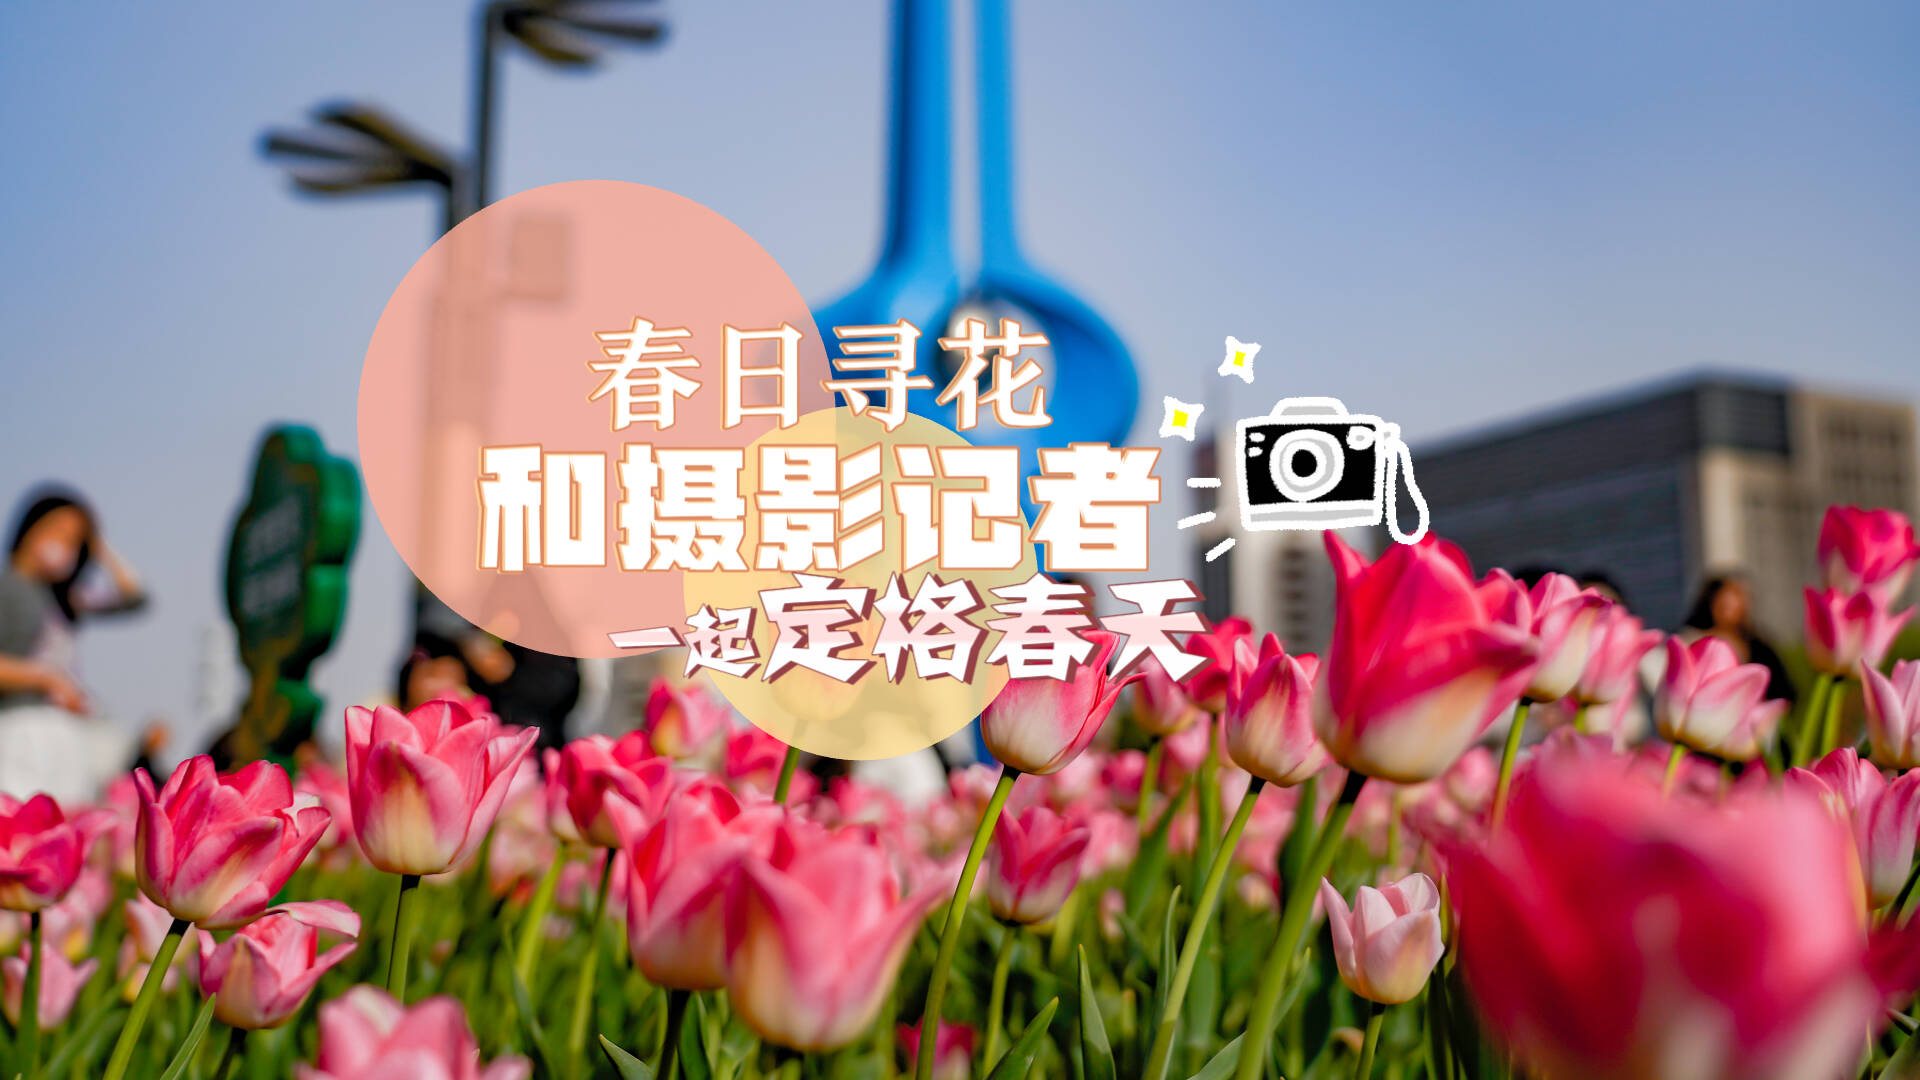 第一视角春日寻花 和摄影记者一起定格春天